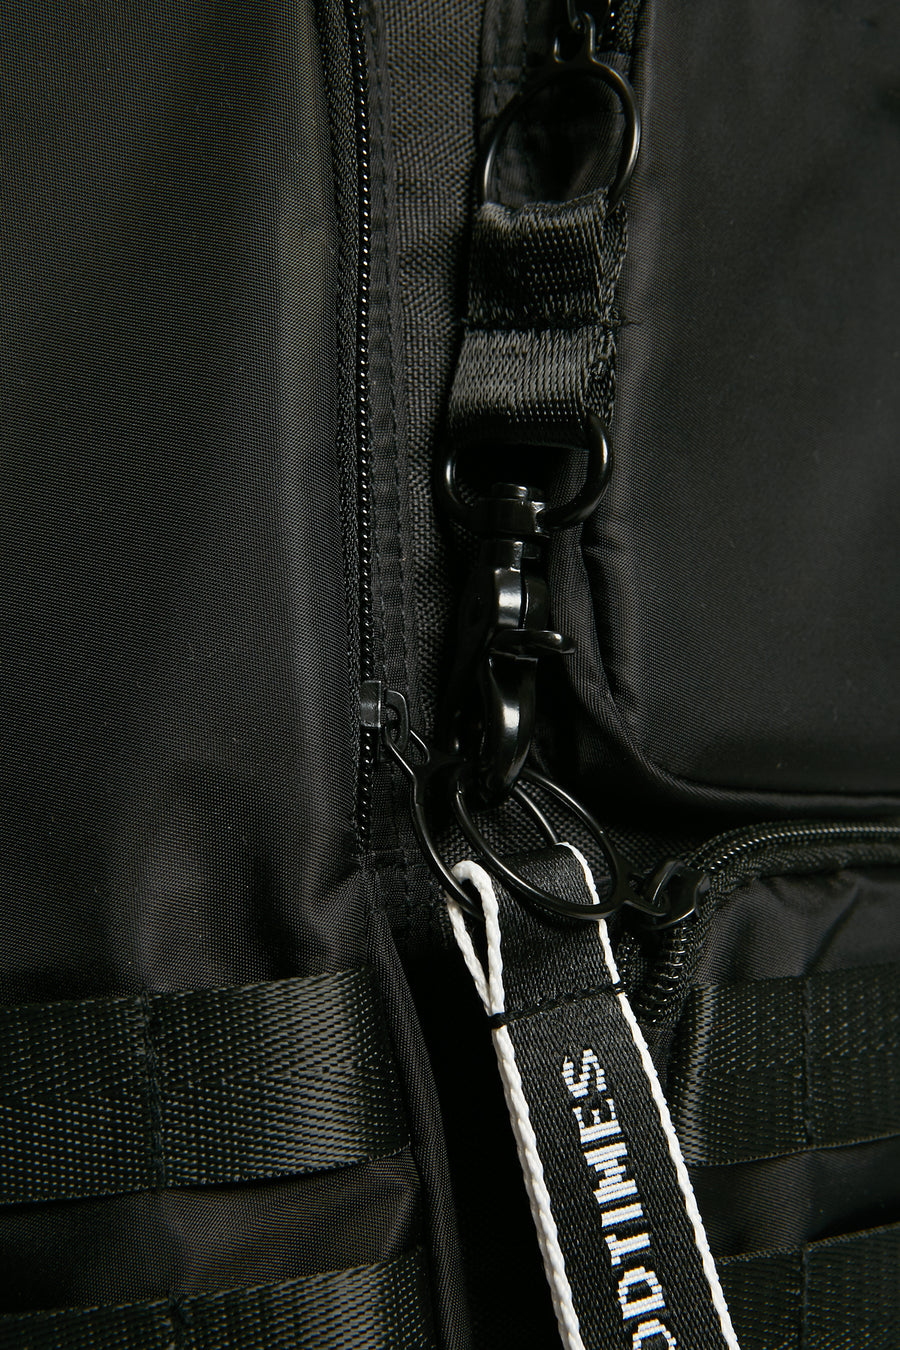 Tokyo Backpack - Stealth Black